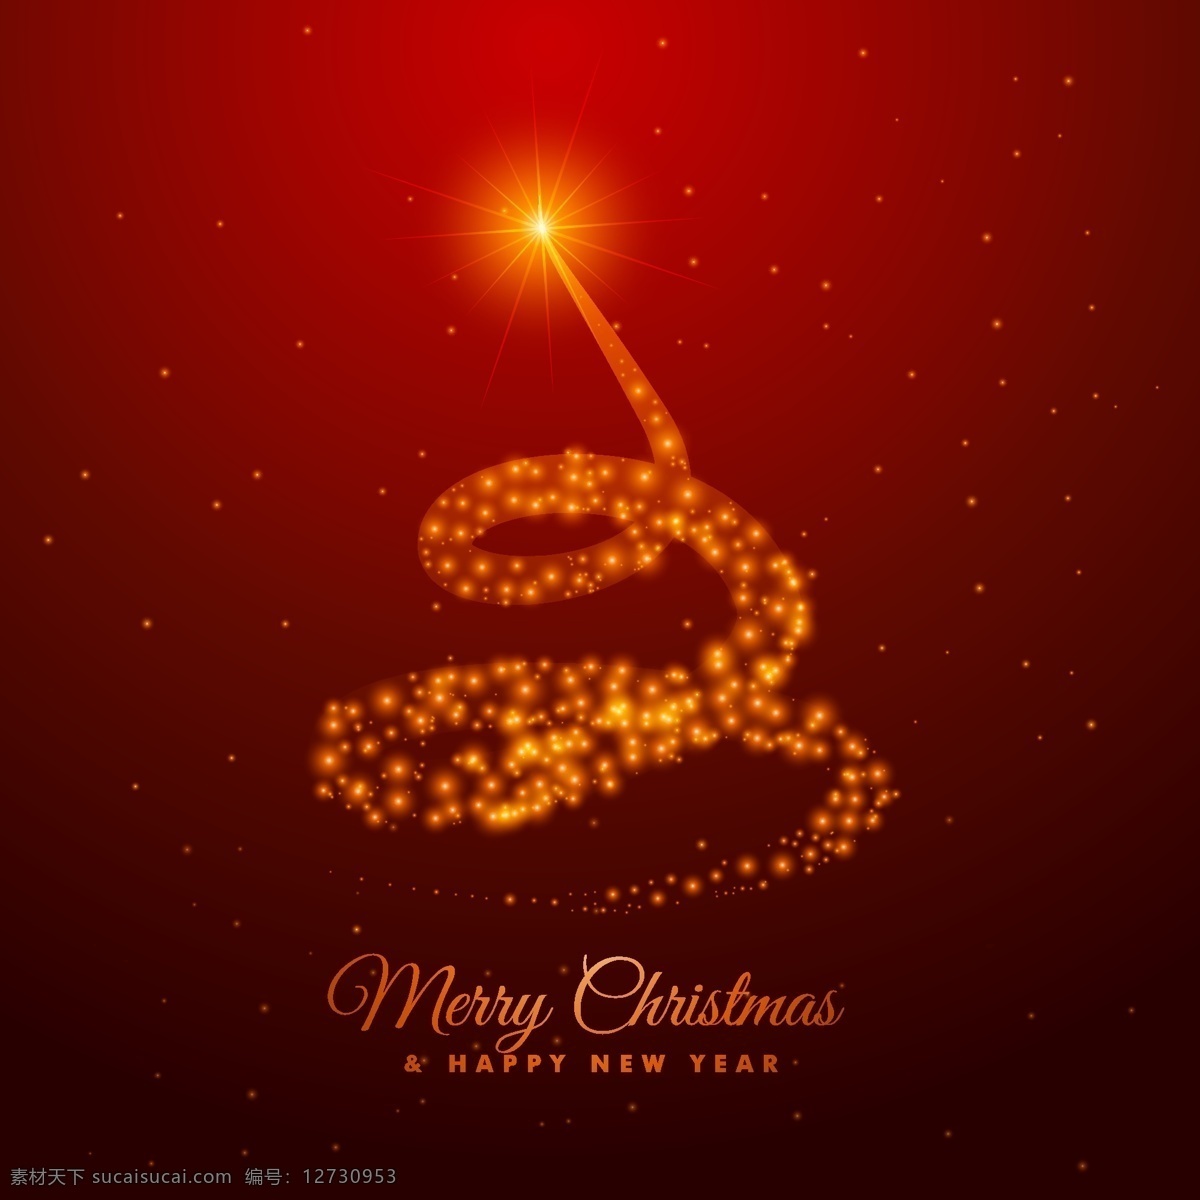 欧式 圣诞节 字体 贺卡 矢量 背景 红色背景 简约背景 祝福 新年 快乐 黄色光点 星光 轨迹 动感 旋转 背景素材